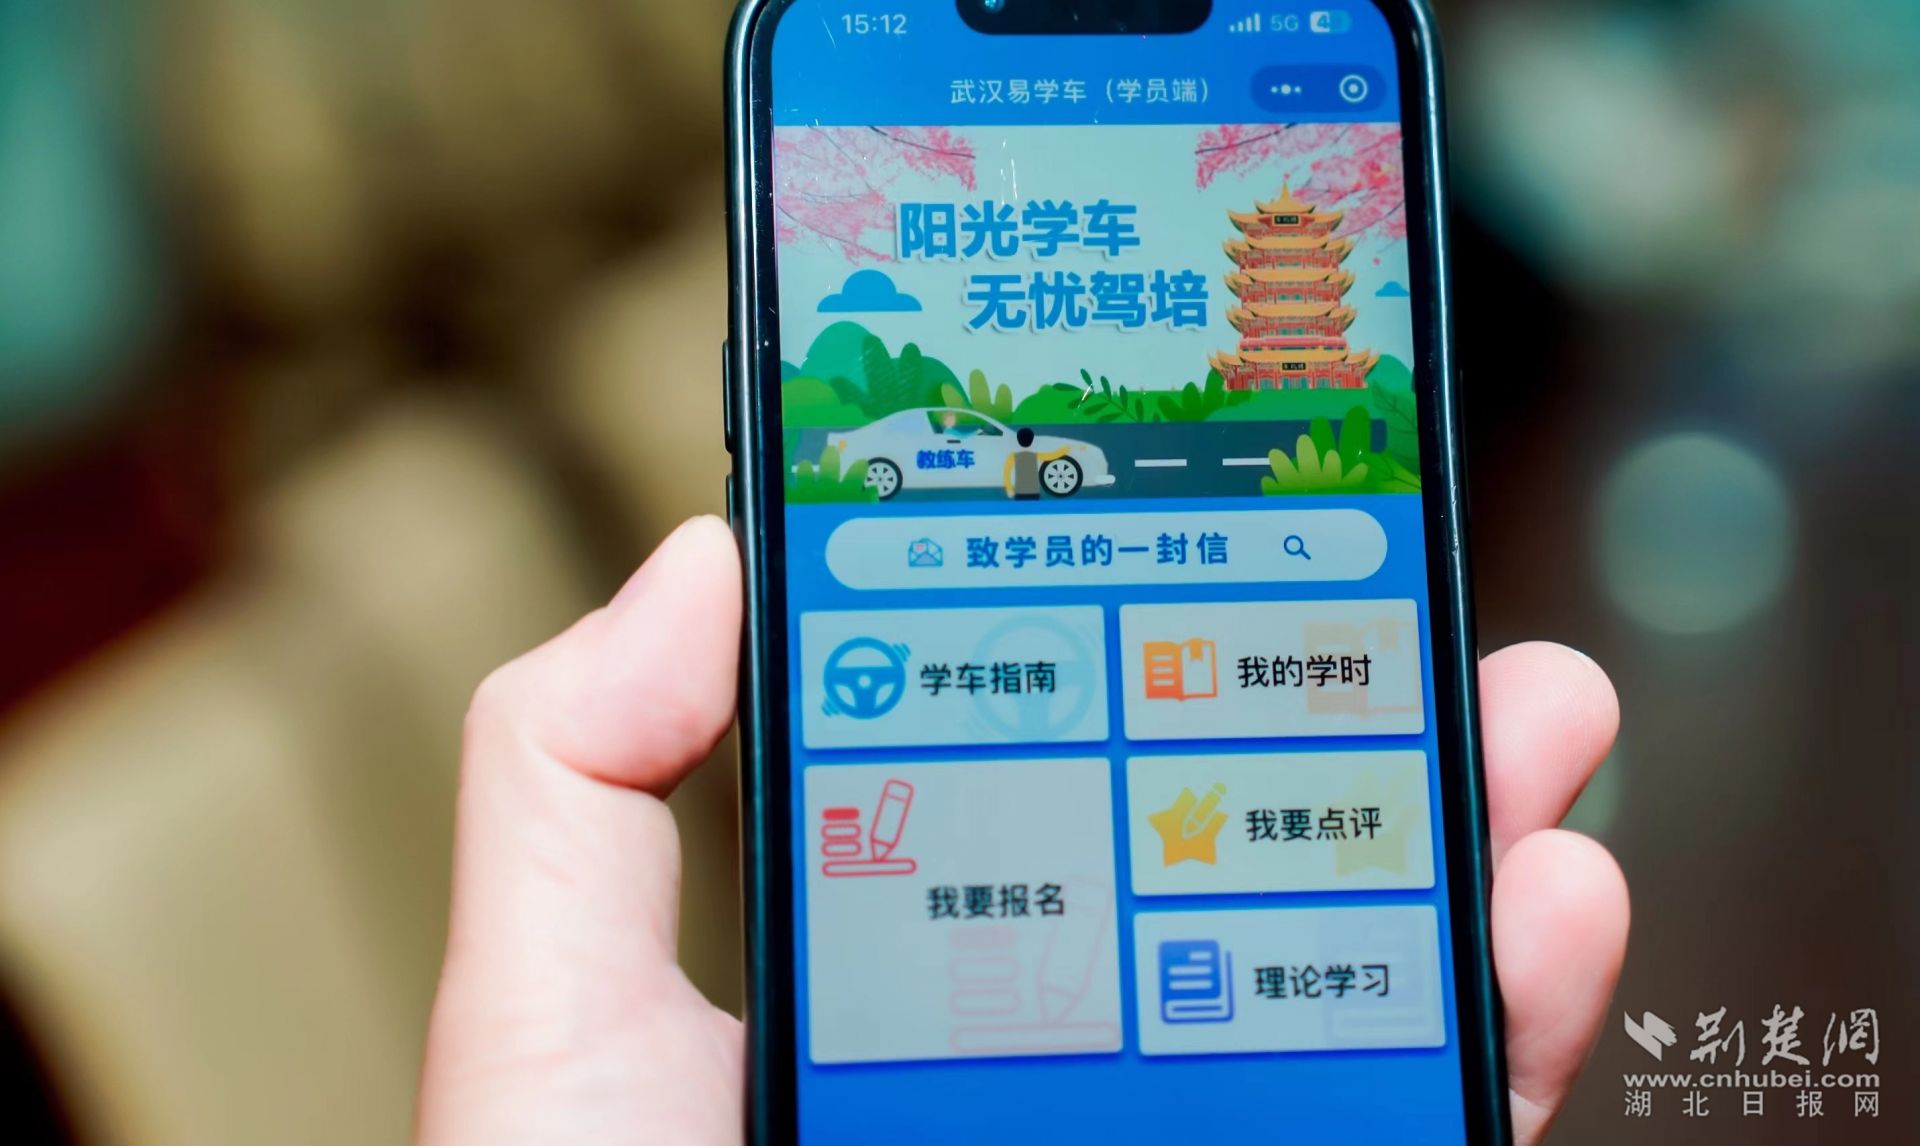 米乐m6·(中国)官方网站武汉驾培公共服务平台上线 为学员提供“一站式”学车服务(图4)